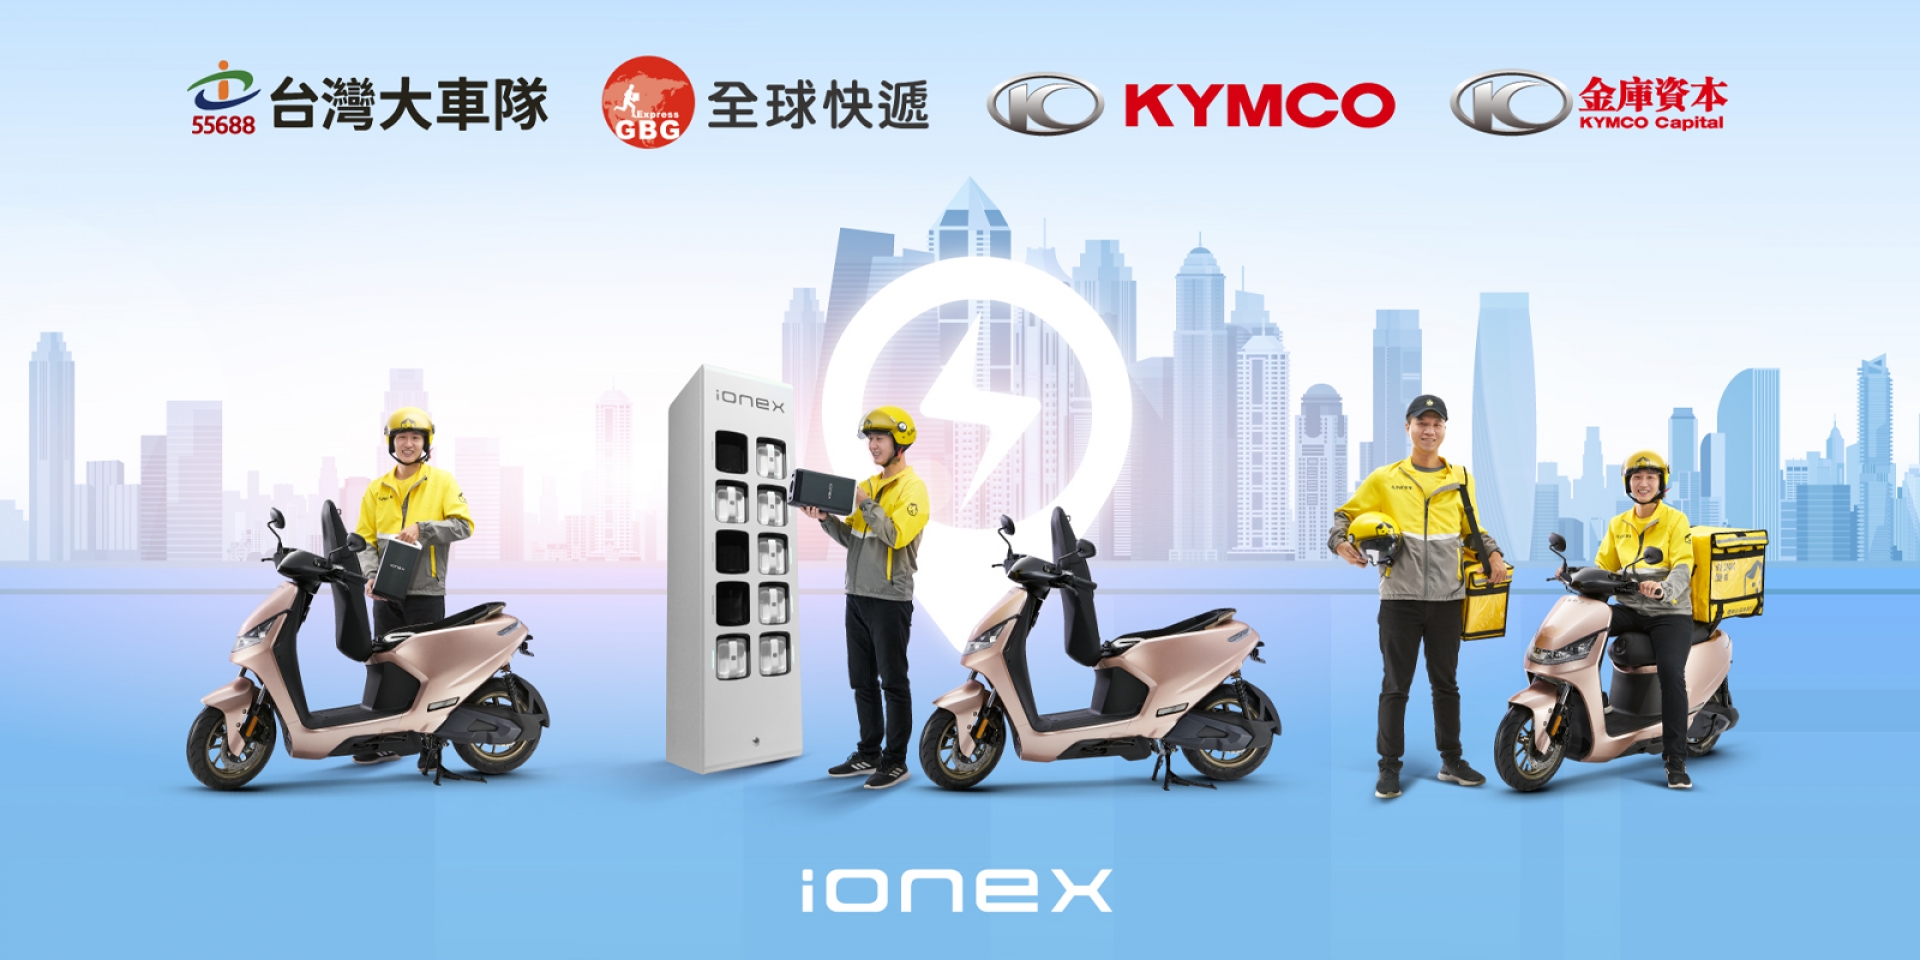 四萬家企業首選「全球快遞」跨業結盟KYMCO Ionex加速電動化轉型 相中新上市「全能座駕S6」客製化車款式樣正式曝光